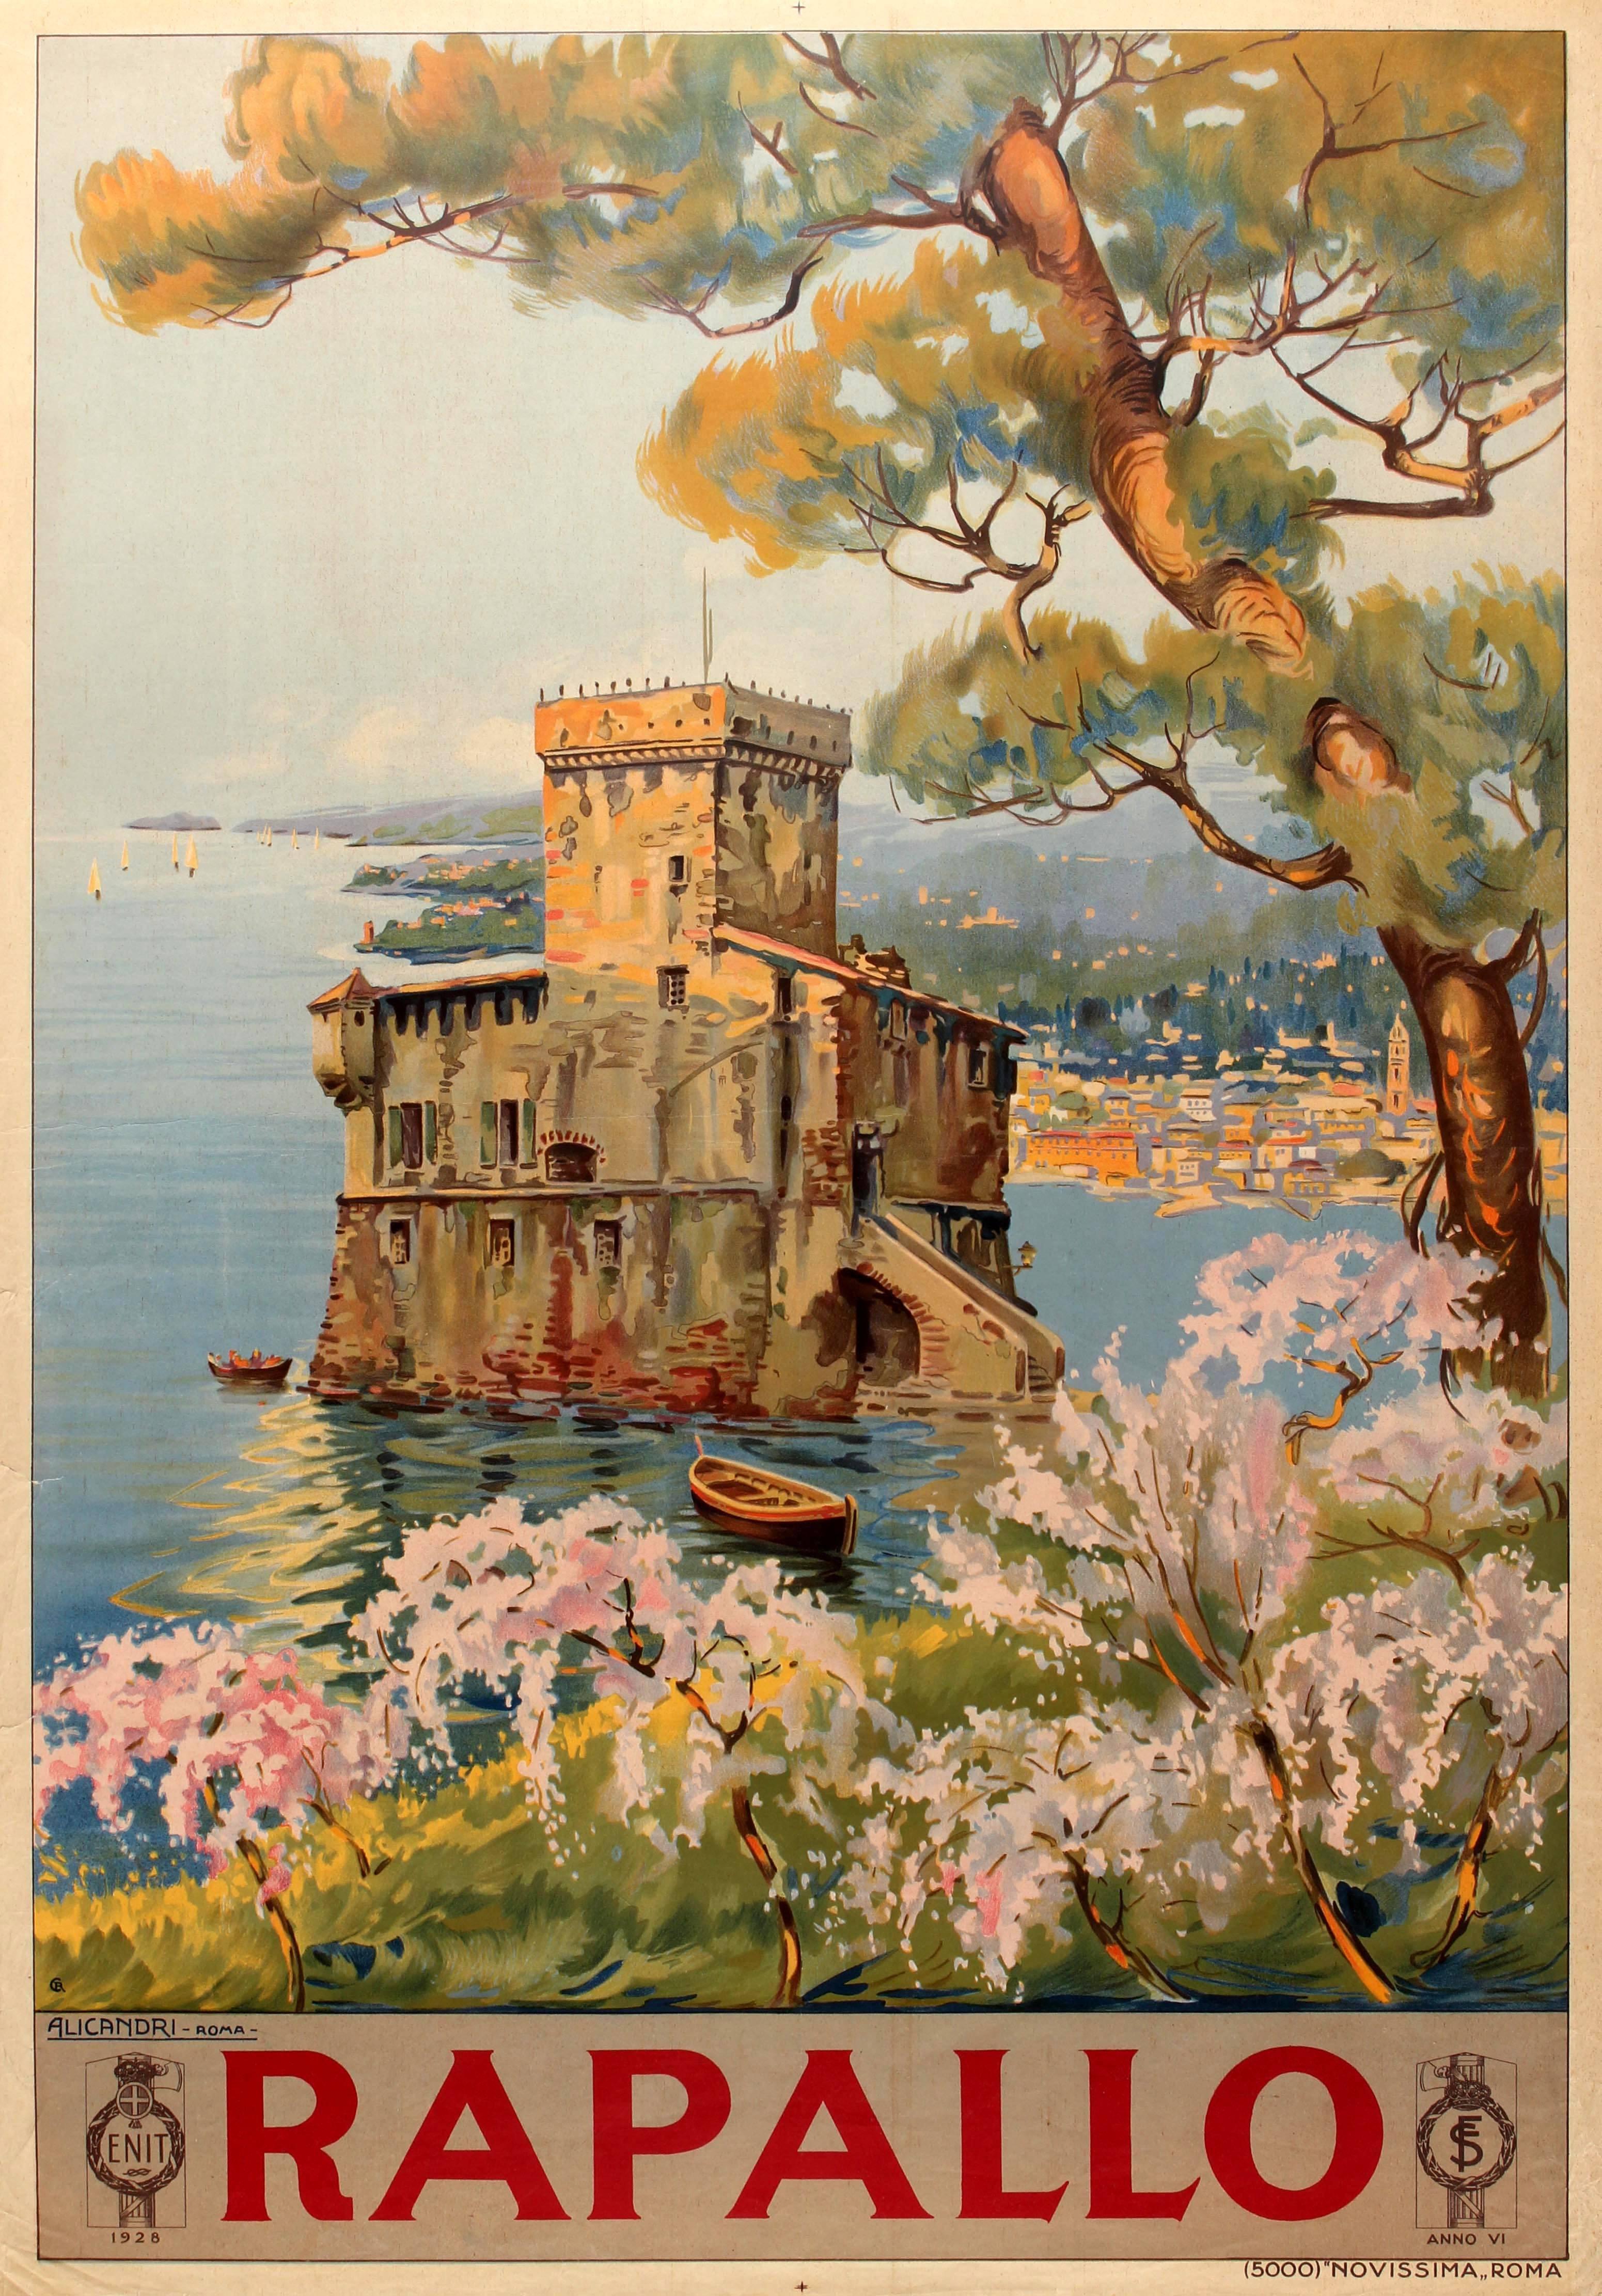 Vincenzo Alicandri Print - Original Travel Poster For Rapallo Italy - Castello Sul Mare / Castle On The Sea